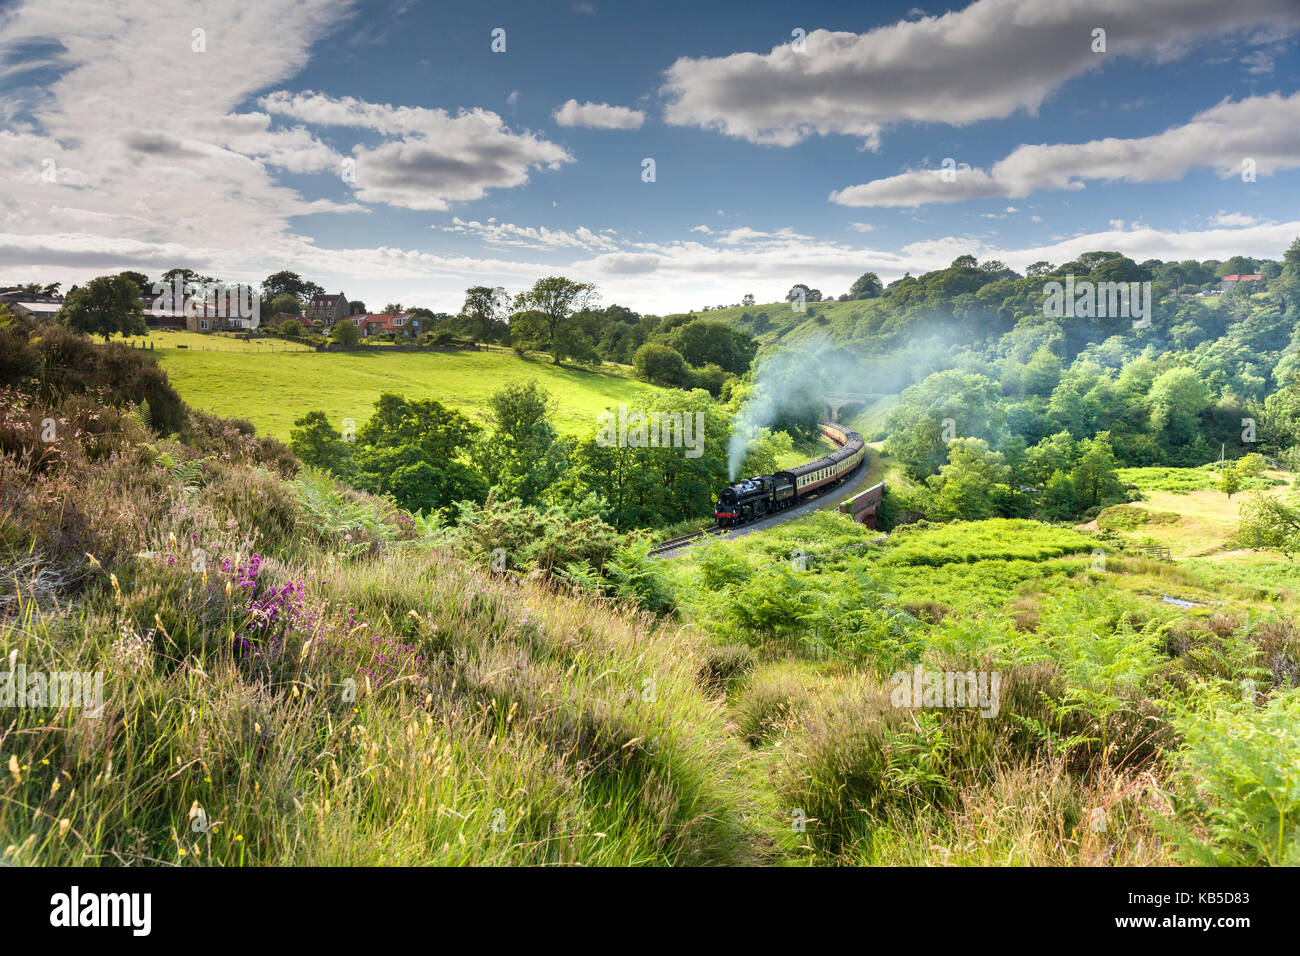 Une locomotive à vapeur à darnholme sur la ligne de chemin de fer du Yorkshire du nord en provenance de Whitby à Pickering, Yorkshire, Angleterre, Royaume-Uni Banque D'Images